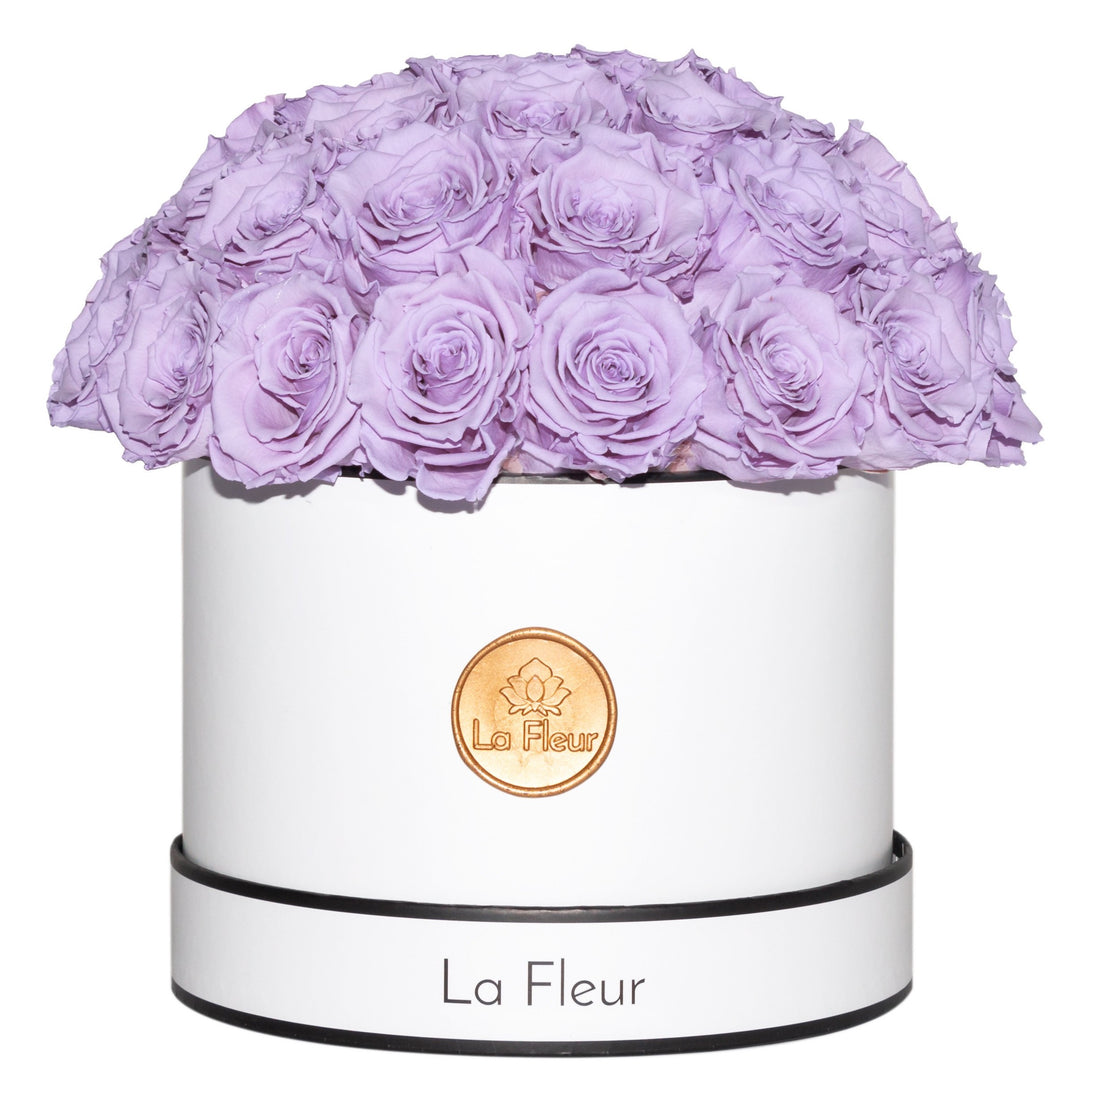 DOME FLEURS Fleuriste conseil vente fleurs bouquets compositions